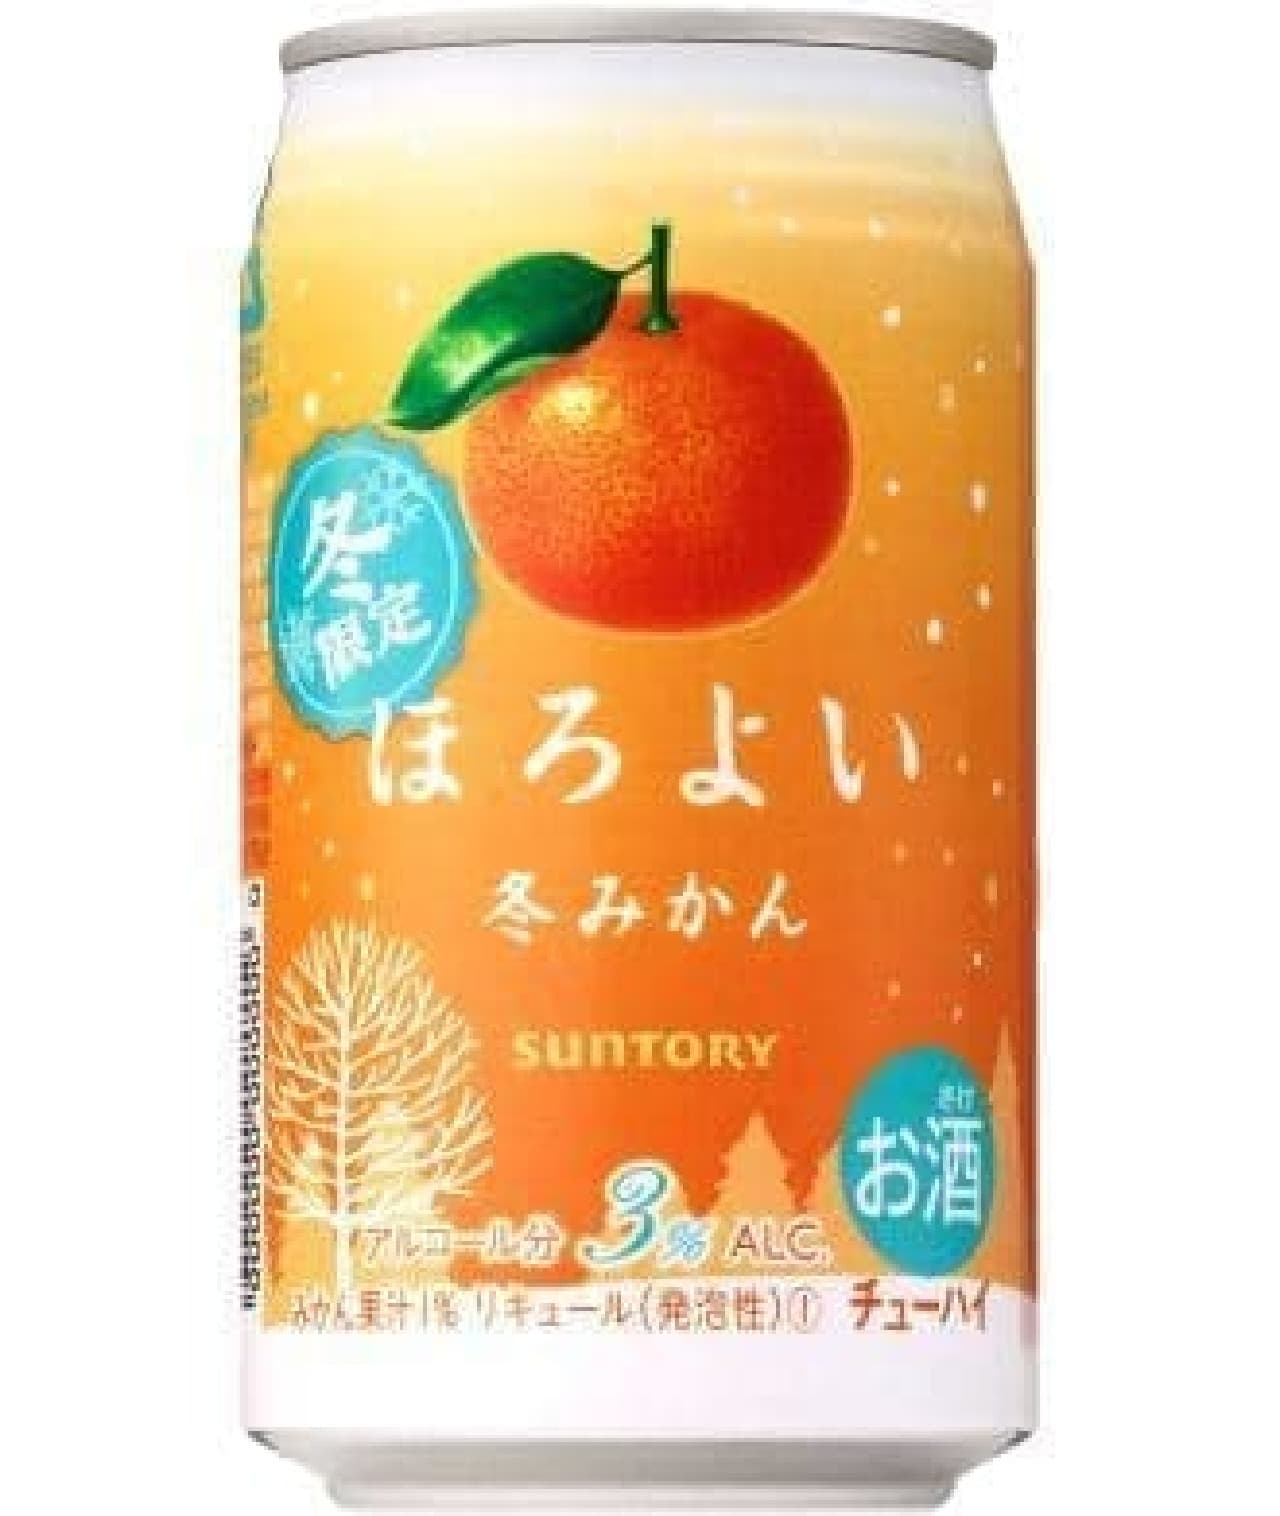 Suntory Chu-Hi "Horoyoi [Winter oranges]"